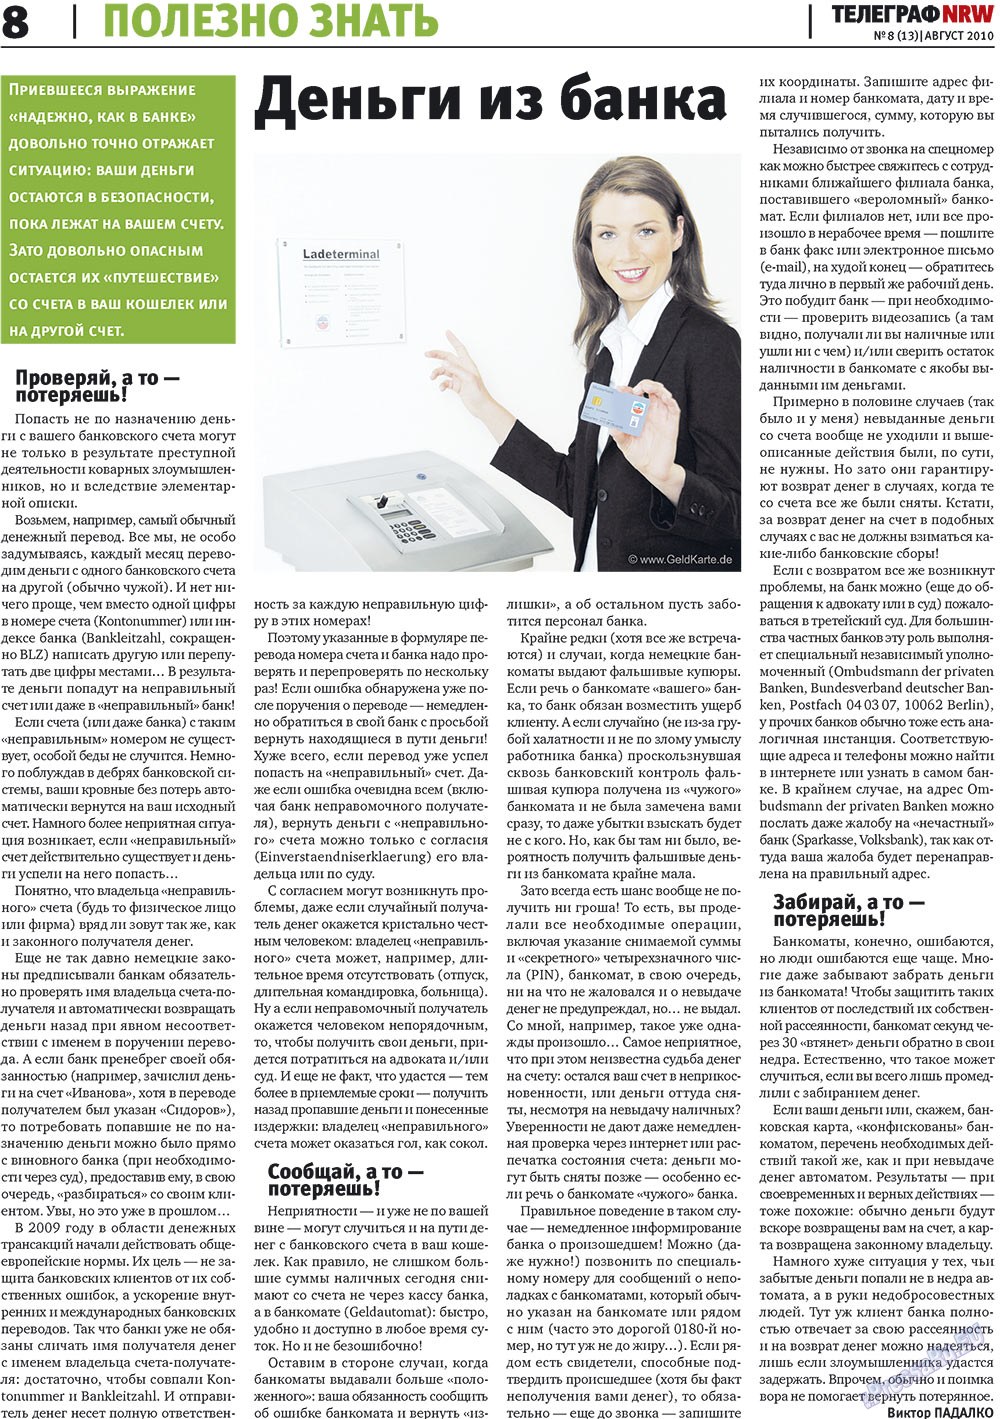 Телеграф NRW (газета). 2010 год, номер 8, стр. 8